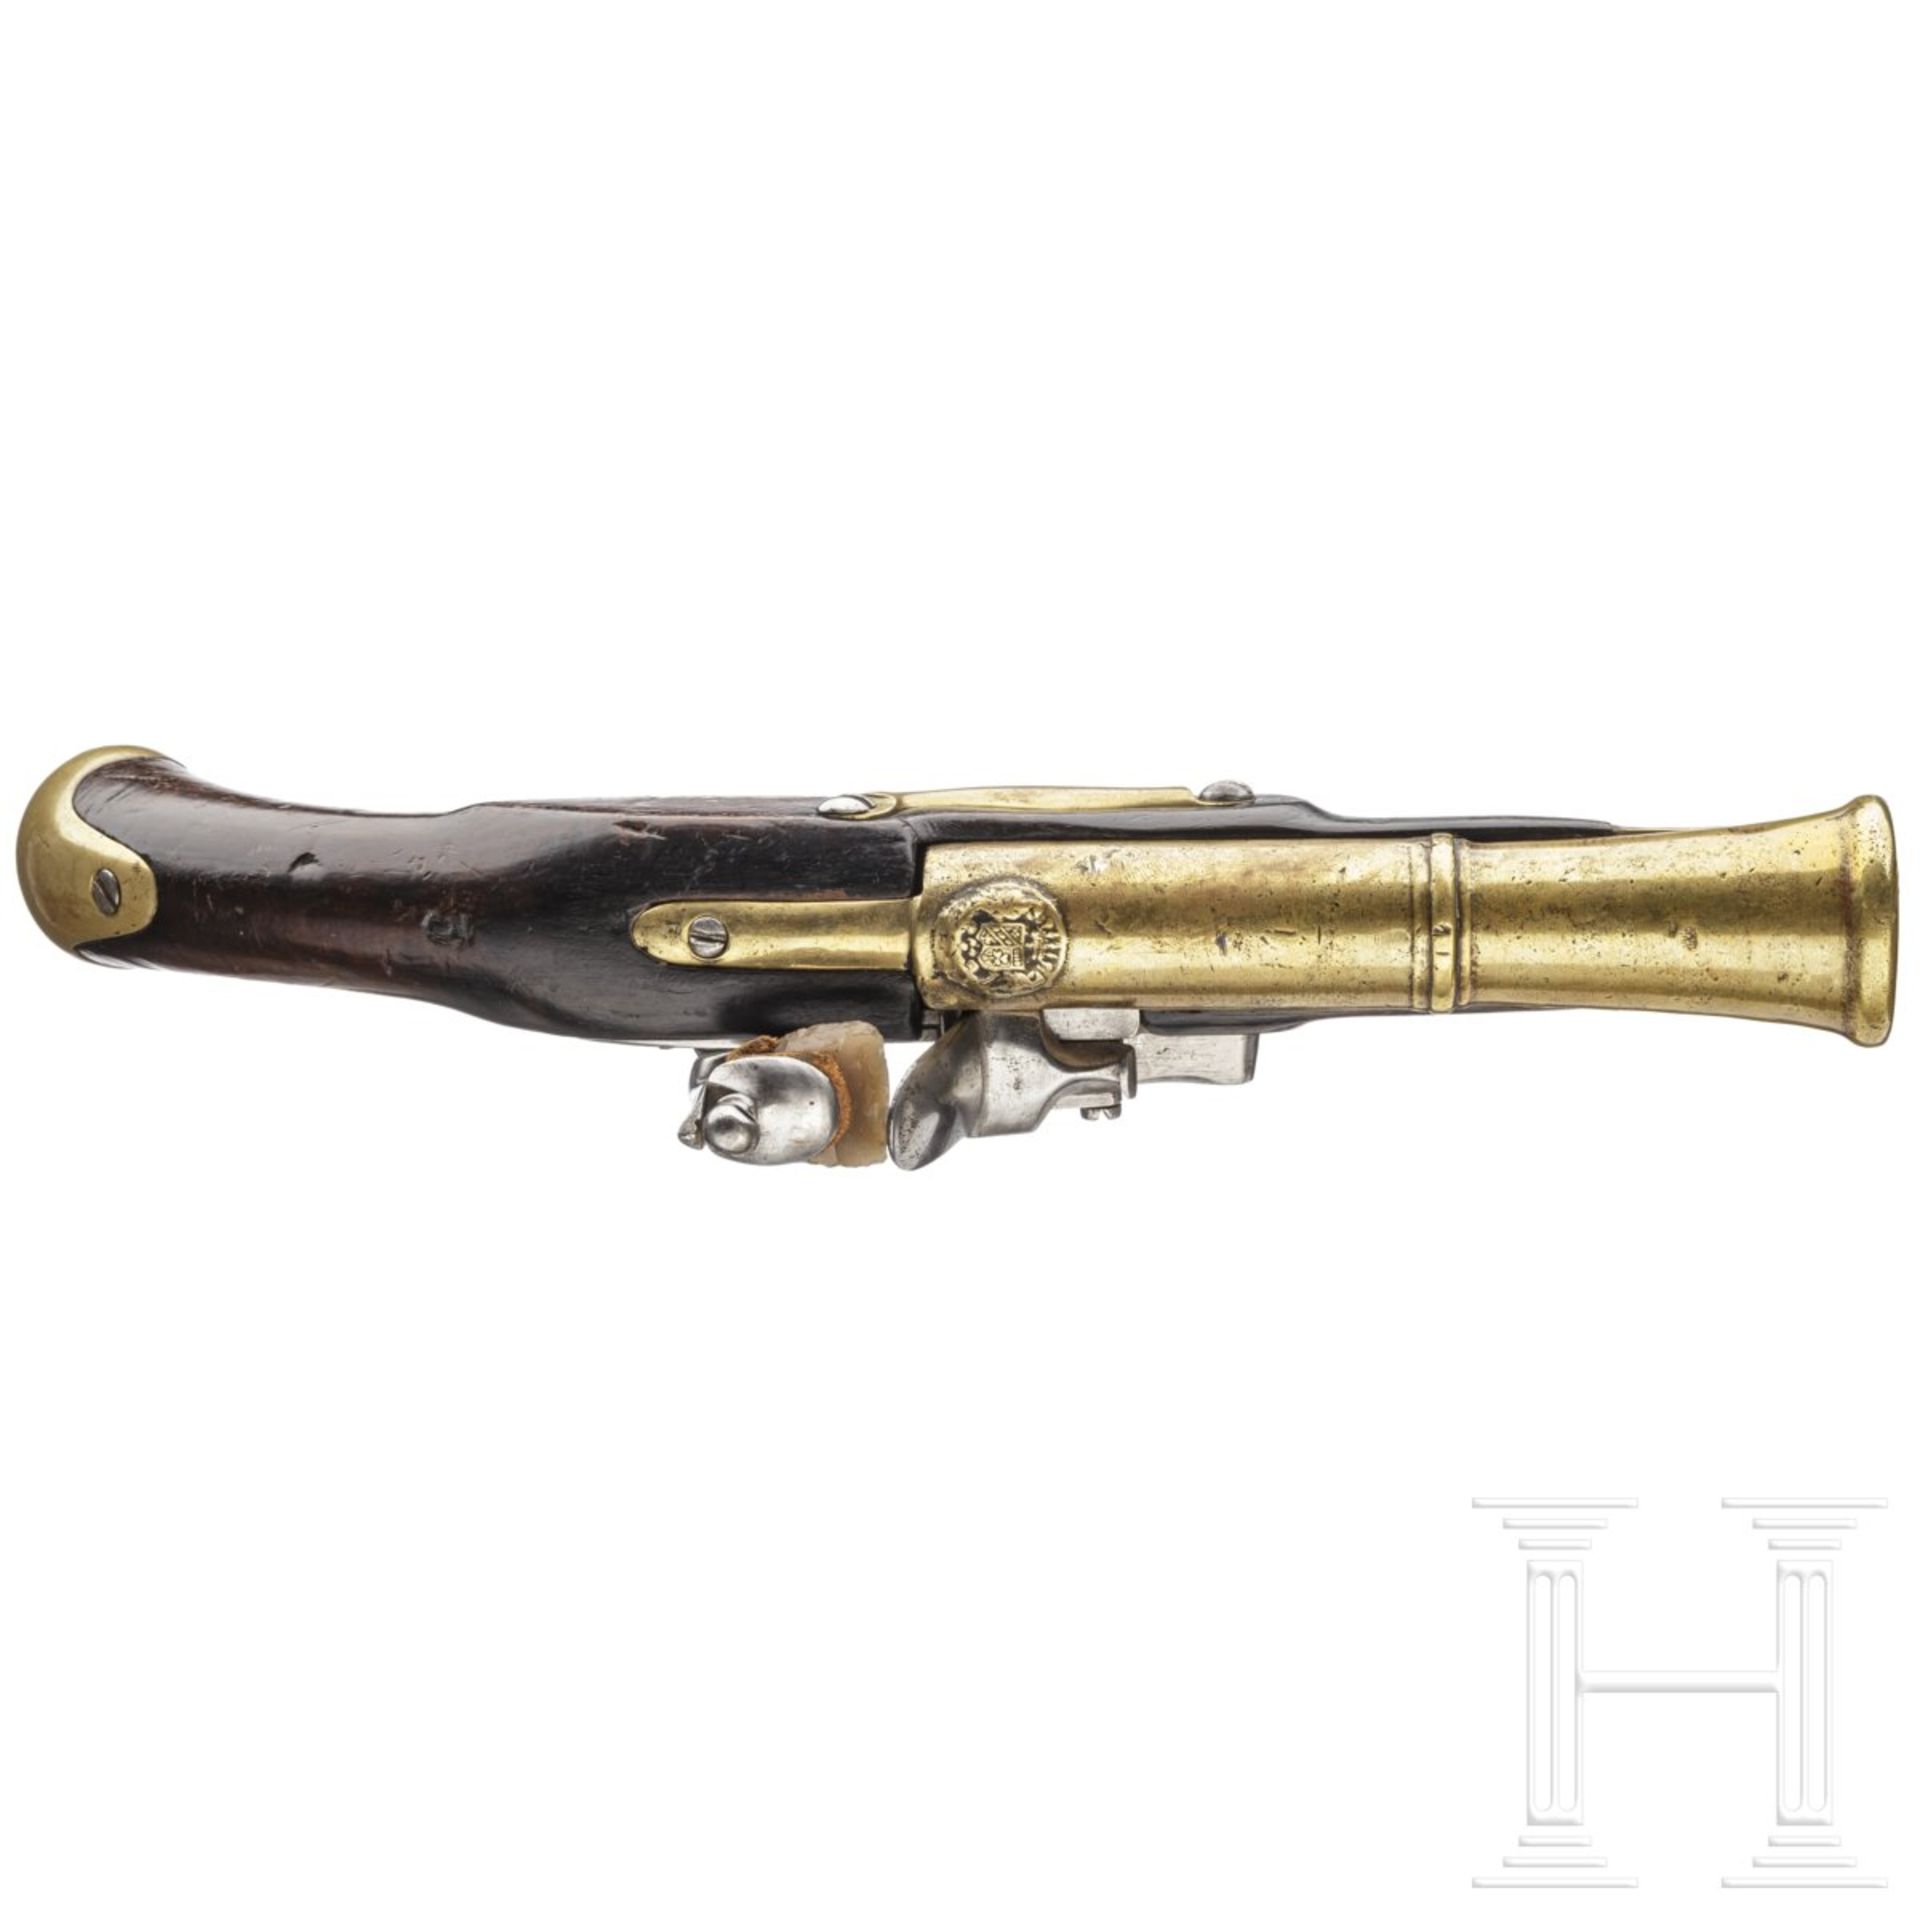 Militärische Steinschlosspistole mit Tromblonlauf aus Messing, wohl Italien, 1. Hälfte 19. Jhdt. - Bild 3 aus 3